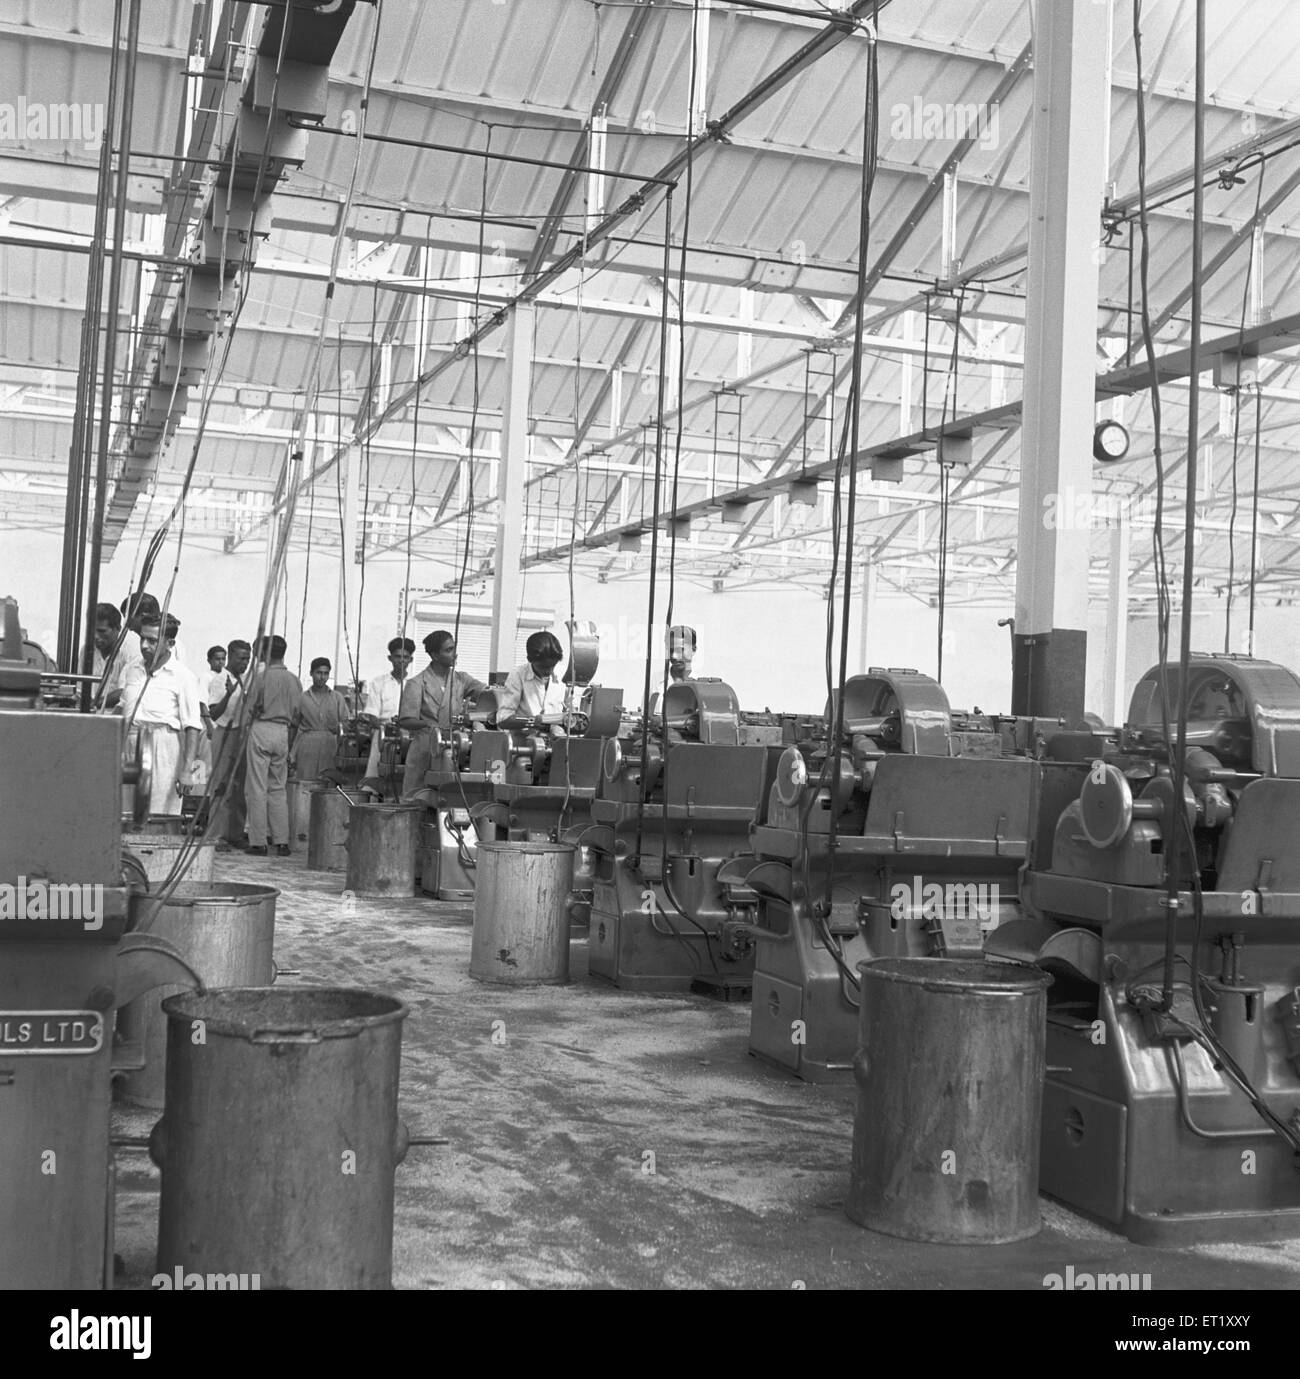 Intérieur de l'usine téléphonique ; fabrication d'instruments téléphoniques à Bangalore ; Karnataka ; Inde ; Asie ; ancienne image de 1900s Banque D'Images